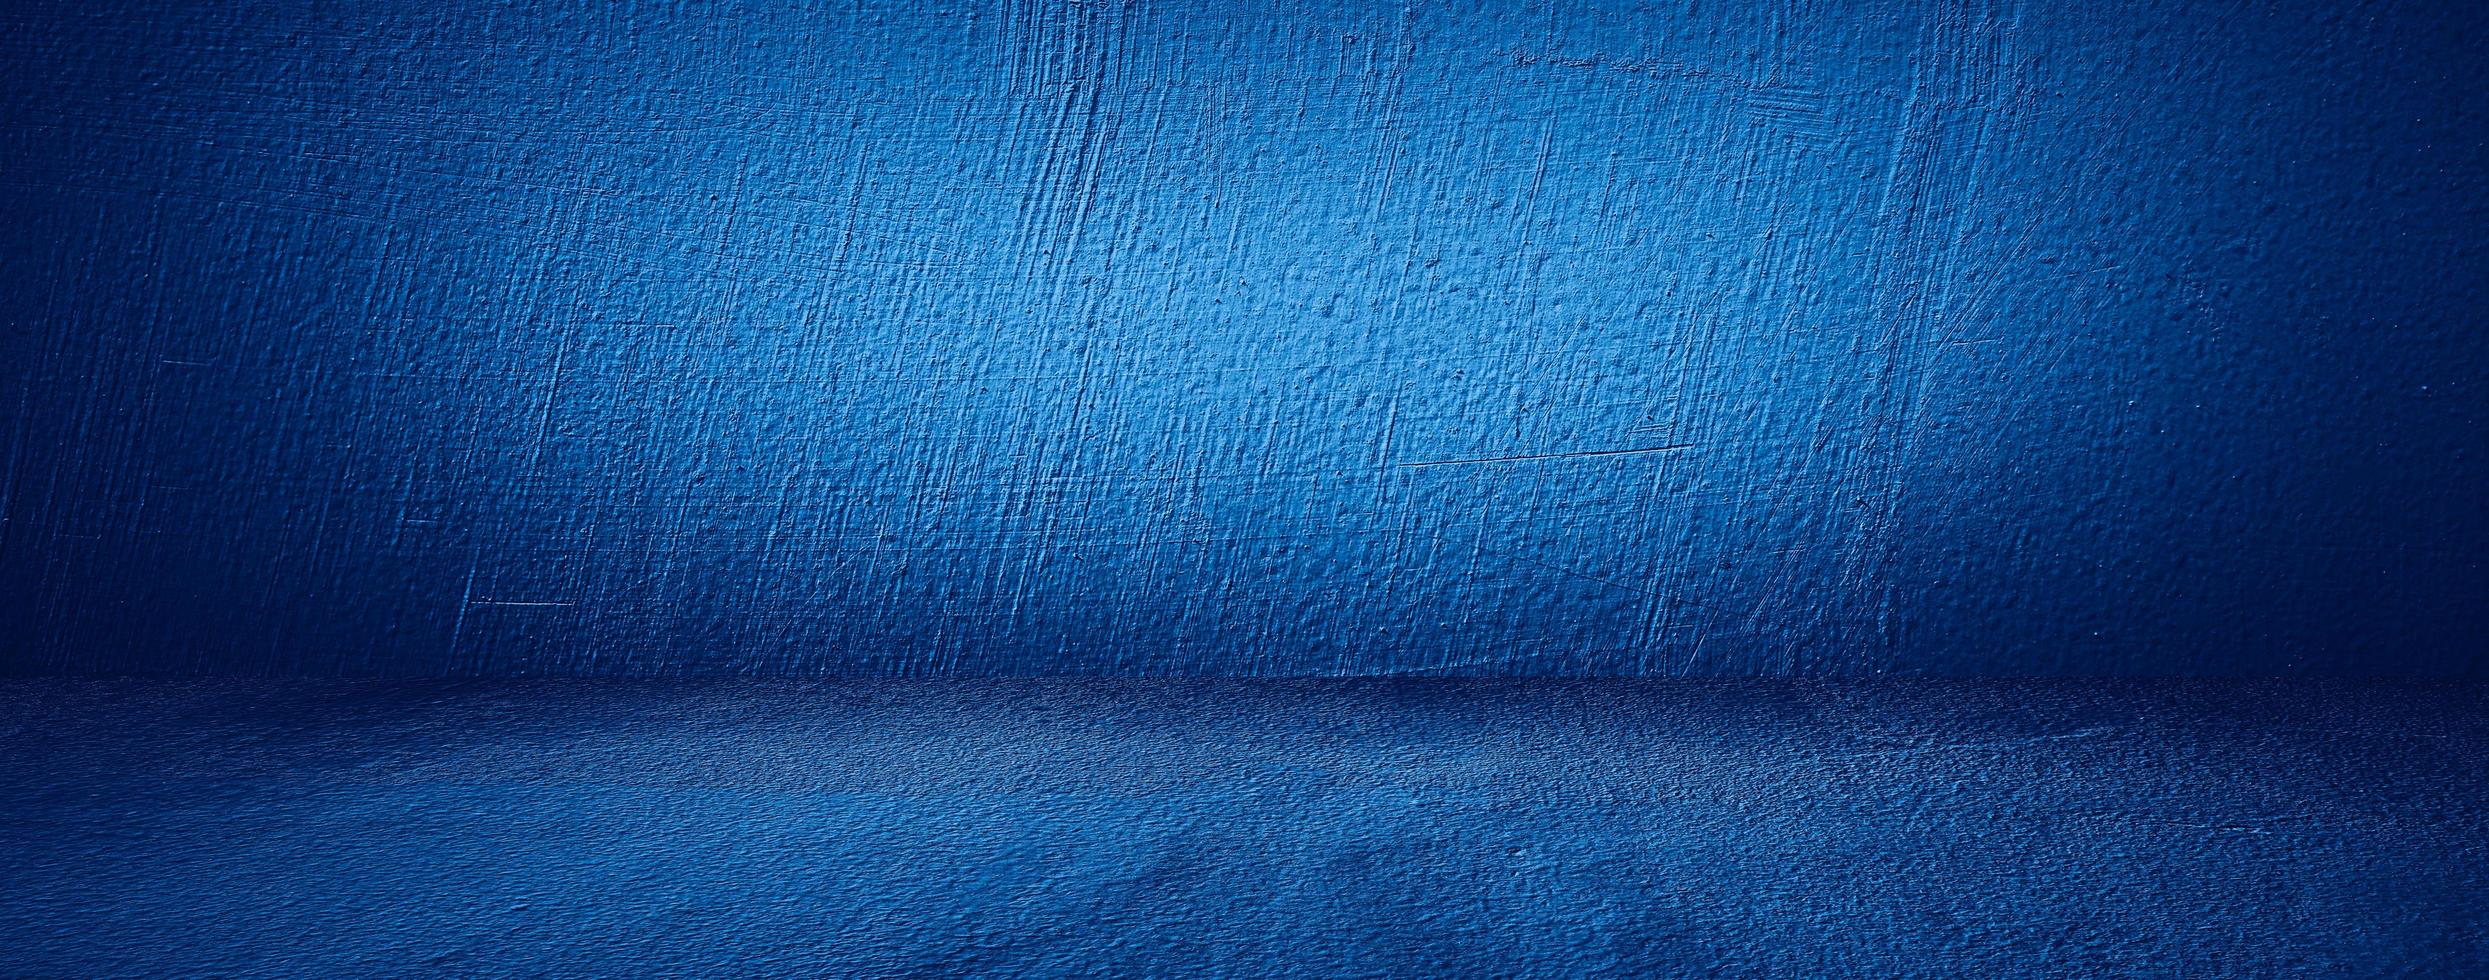 salle vide bleu sol en béton de ciment et mur abstrait texture background photo